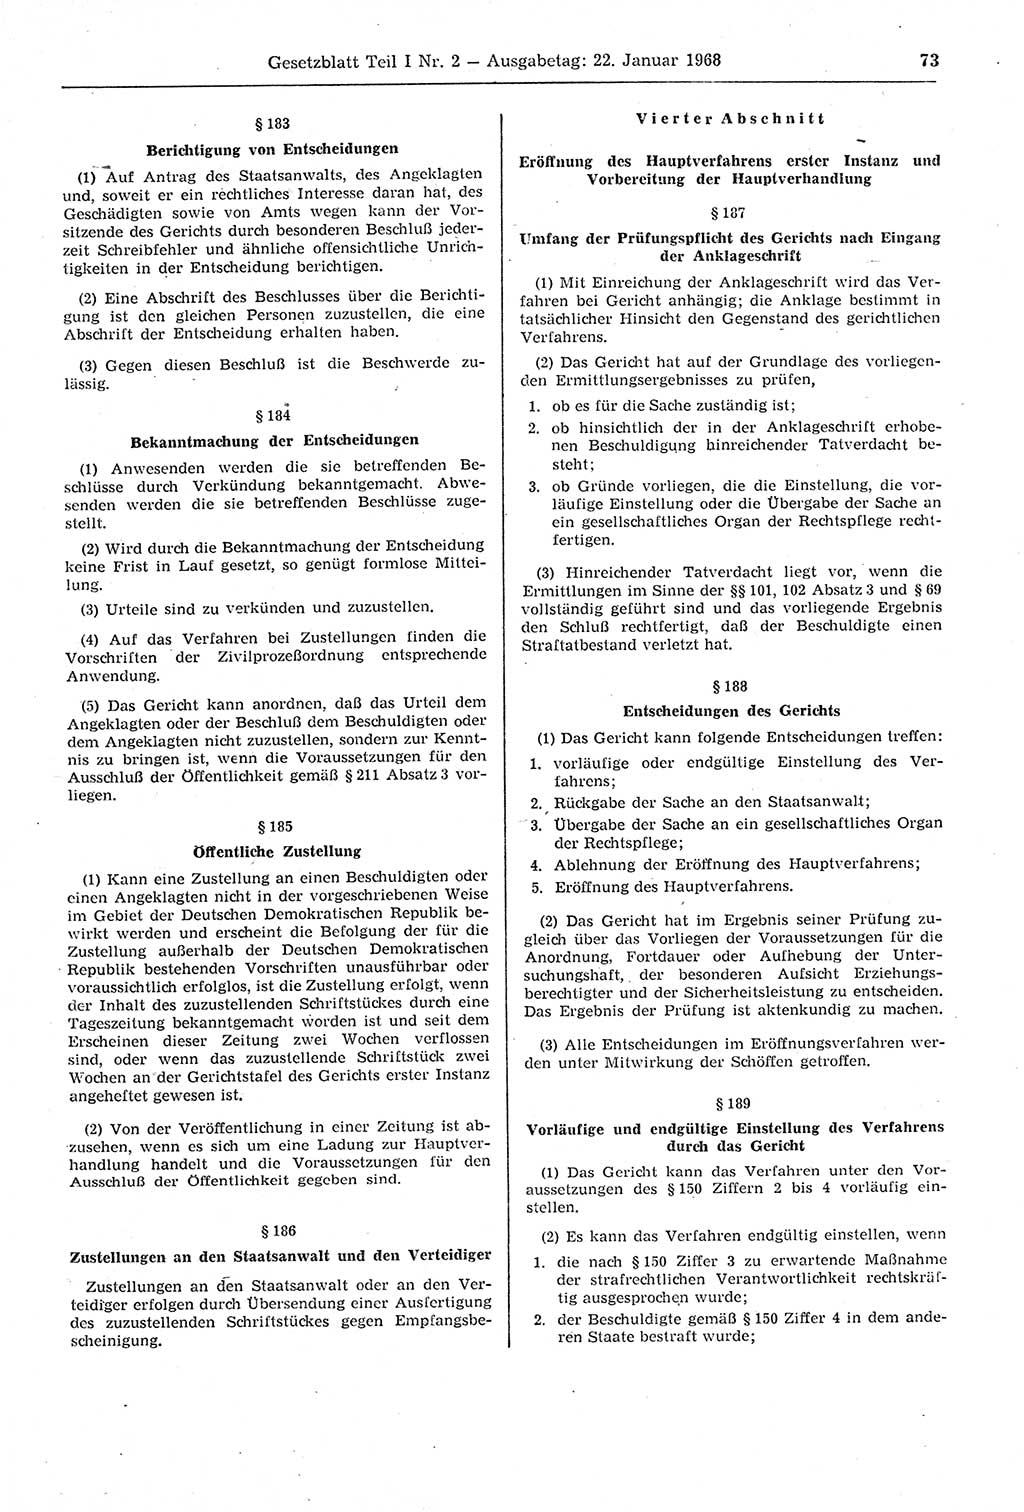 Gesetzblatt (GBl.) der Deutschen Demokratischen Republik (DDR) Teil Ⅰ 1968, Seite 73 (GBl. DDR Ⅰ 1968, S. 73)